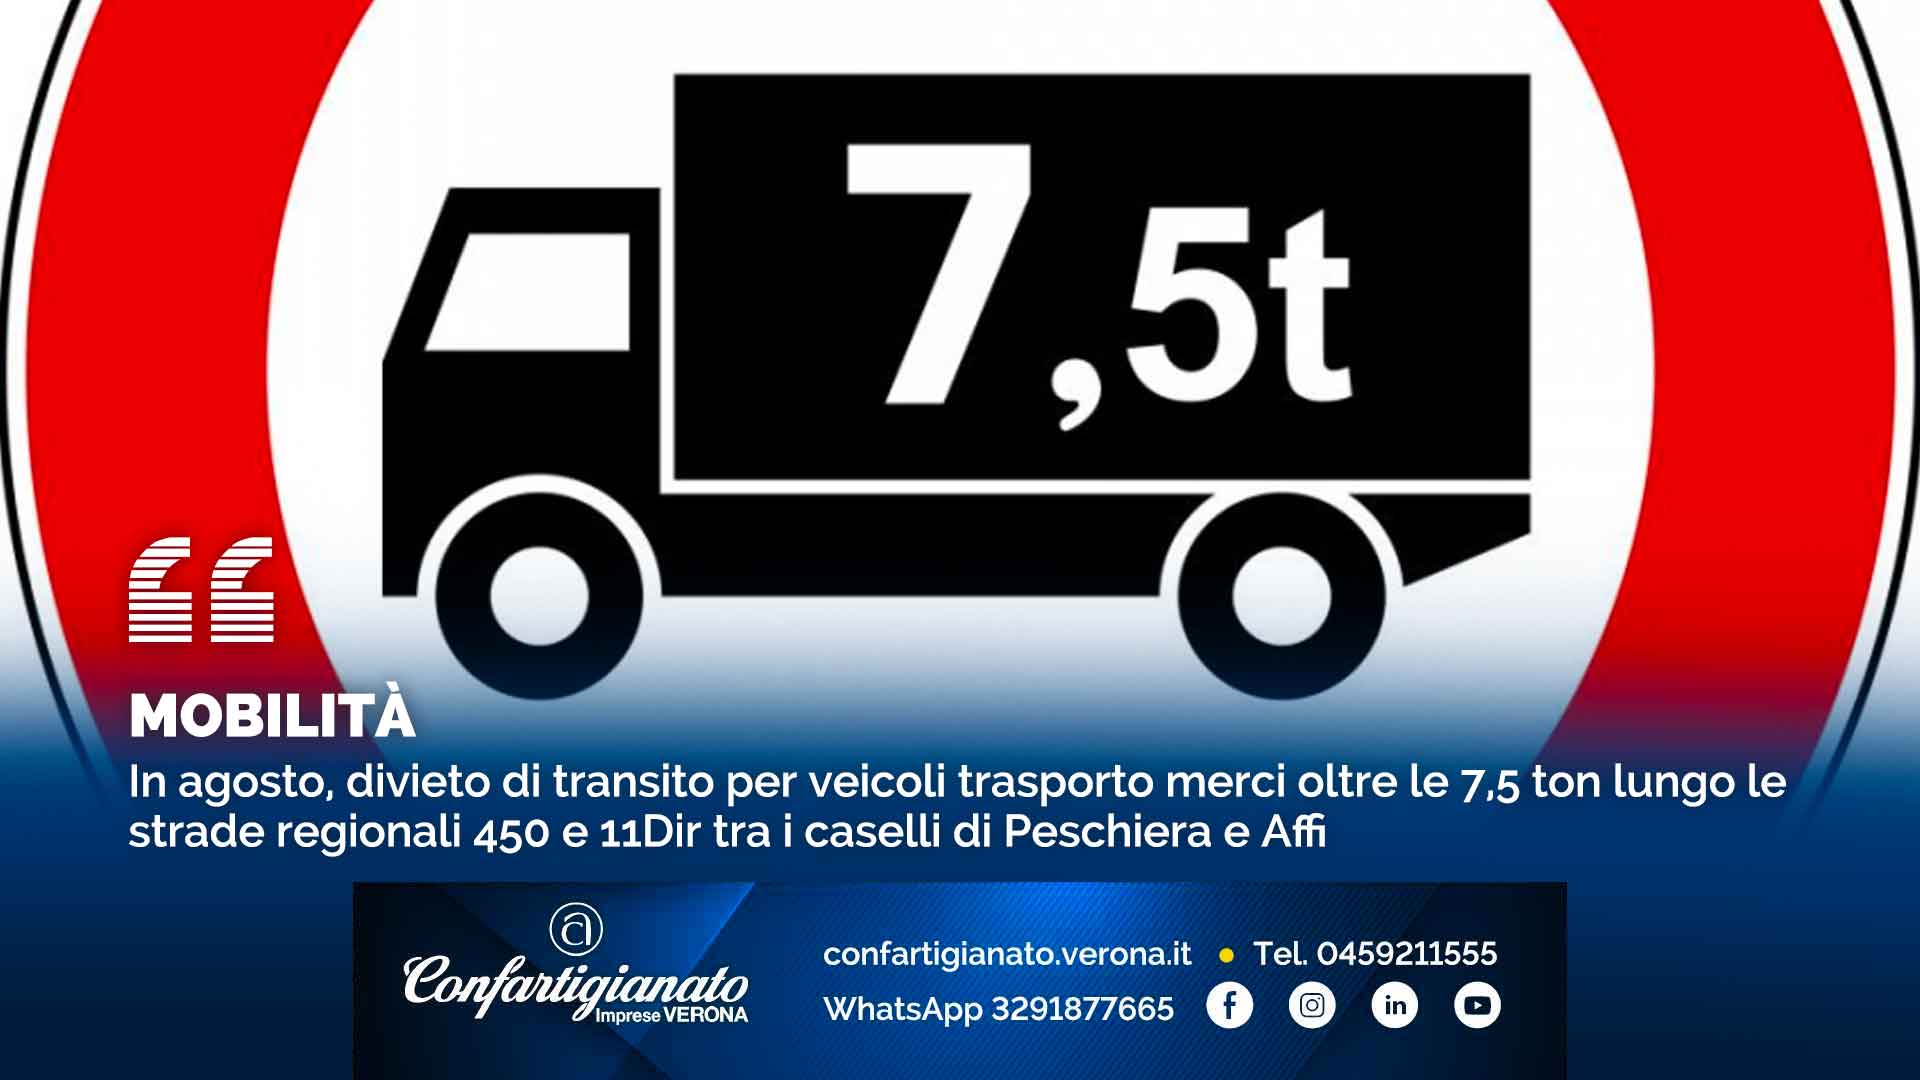 MOBILITA' – In agosto, divieto di transito per veicoli trasporto merci oltre le 7,5 ton lungo le strade regionali 450 e 11Dir tra i caselli di Peschiera e Affi